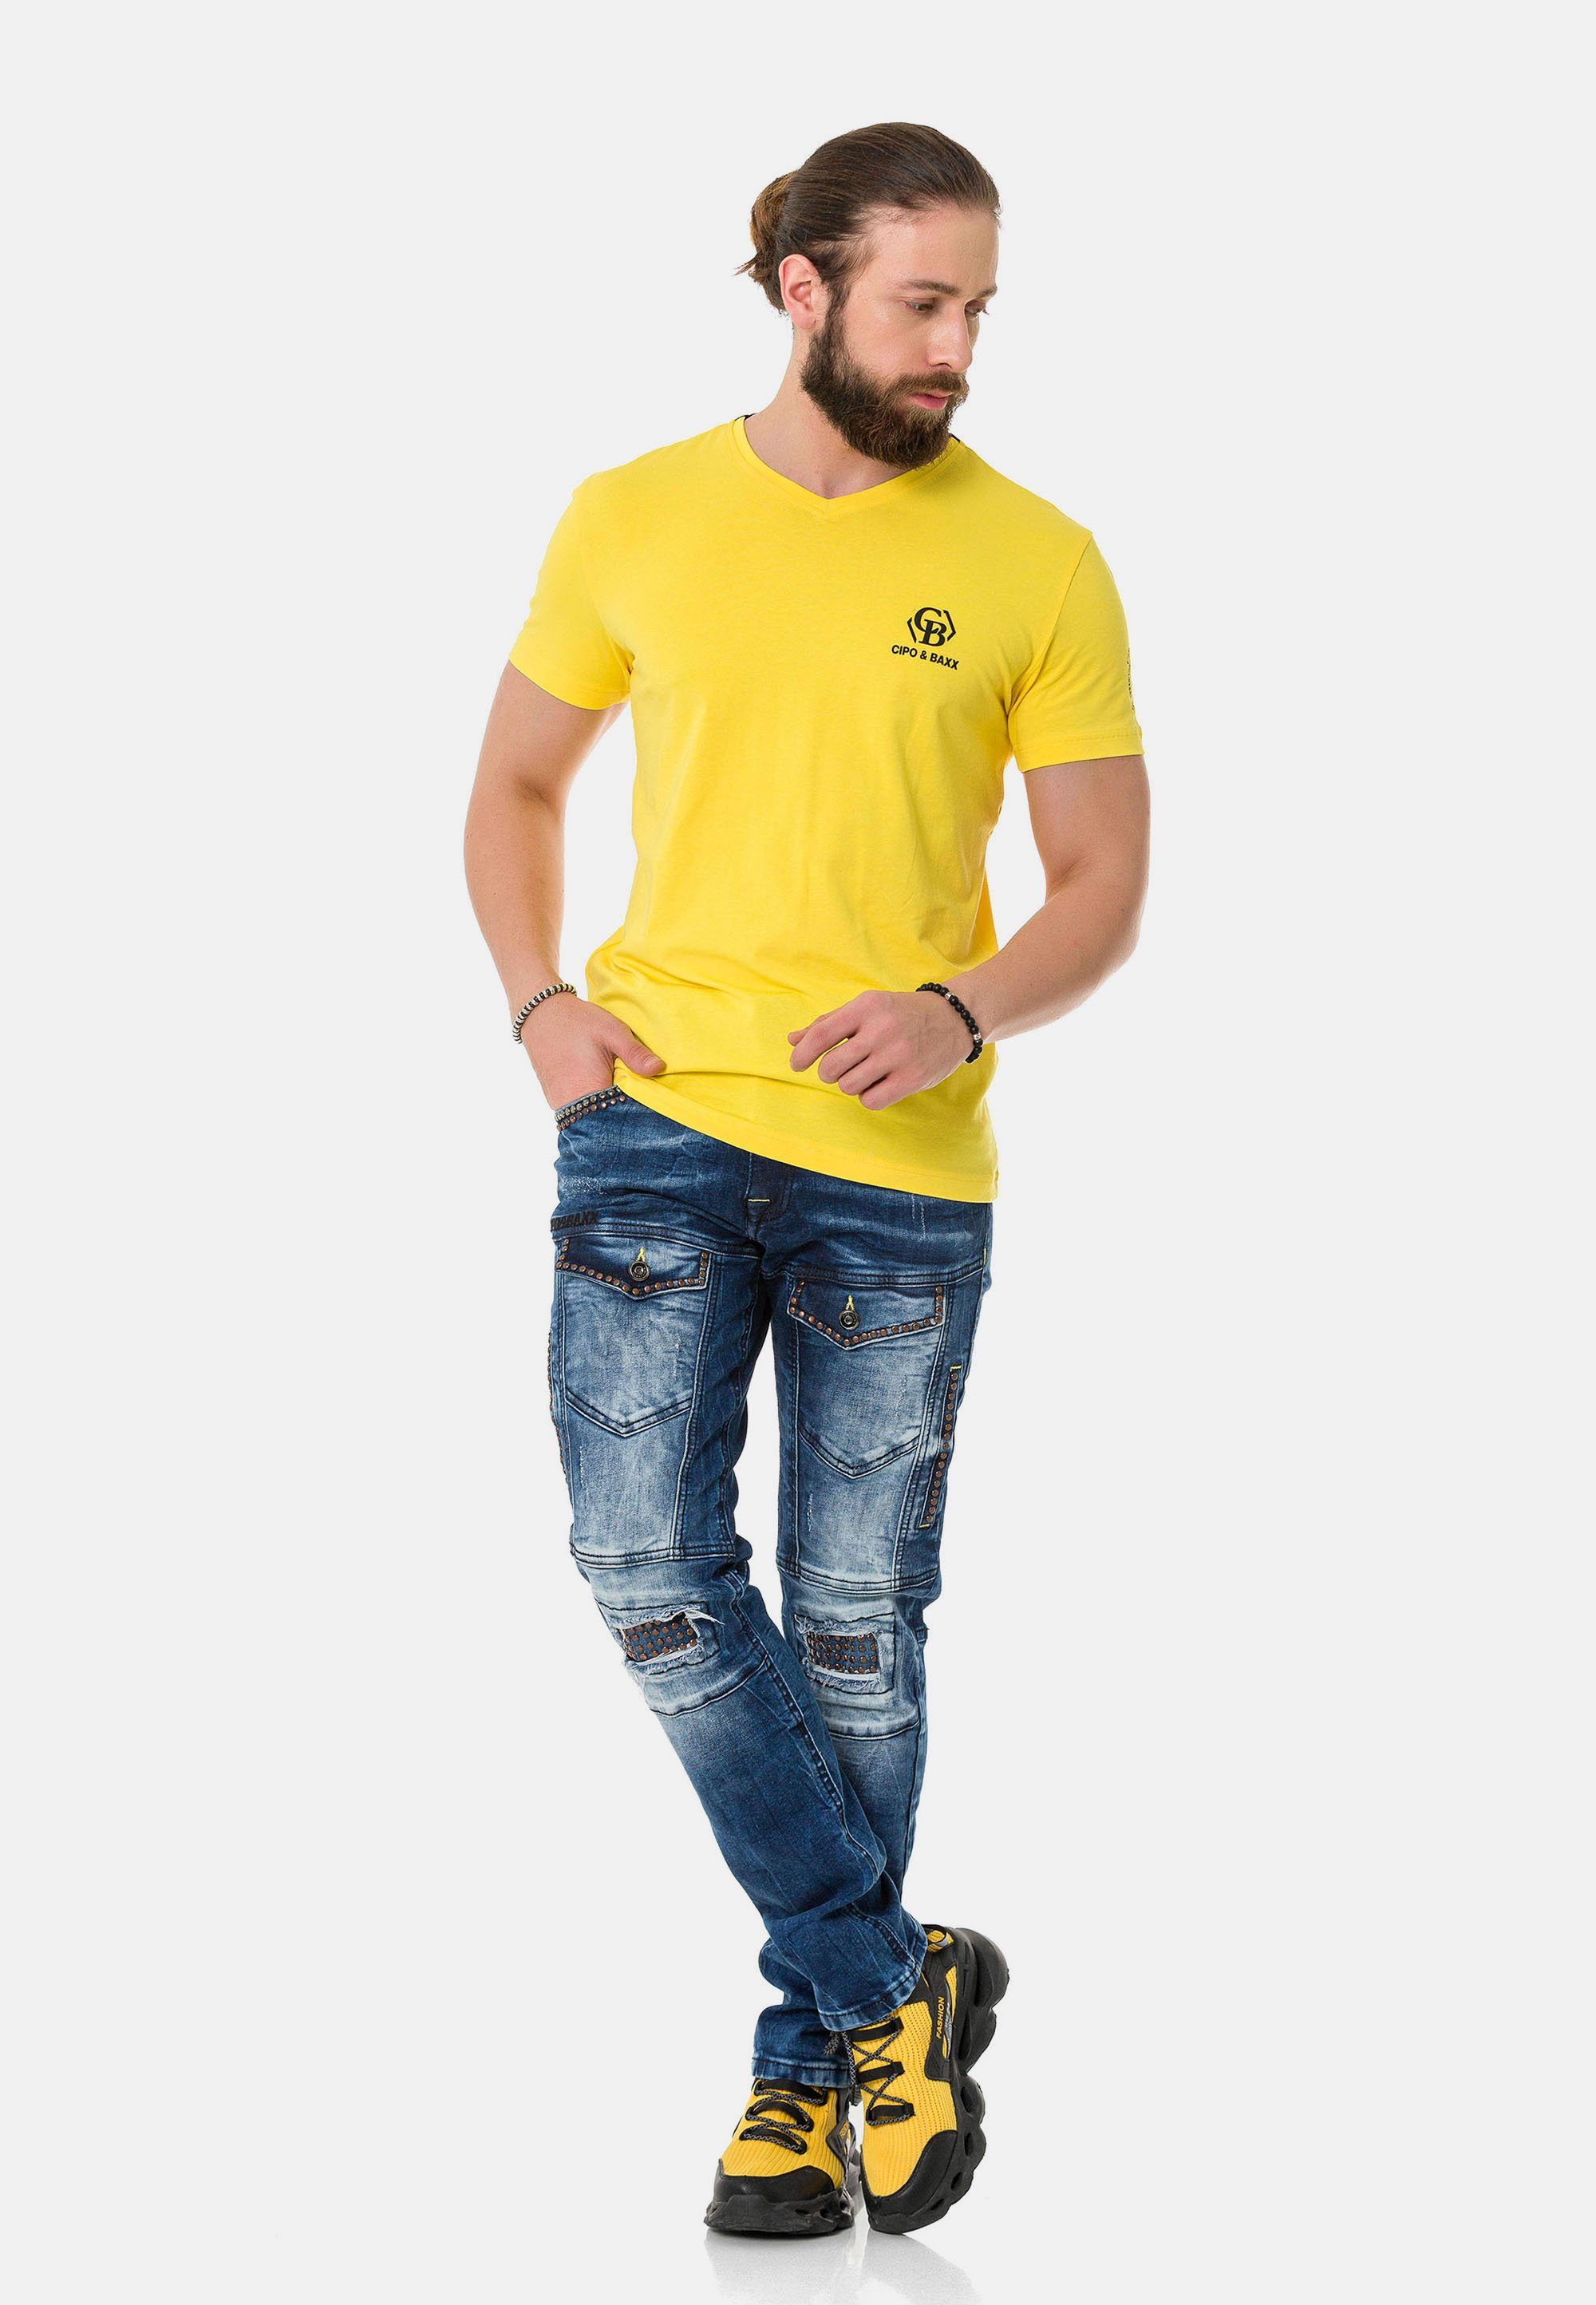 dezenten Baxx Cipo Markenlogos T-Shirt gelb & mit